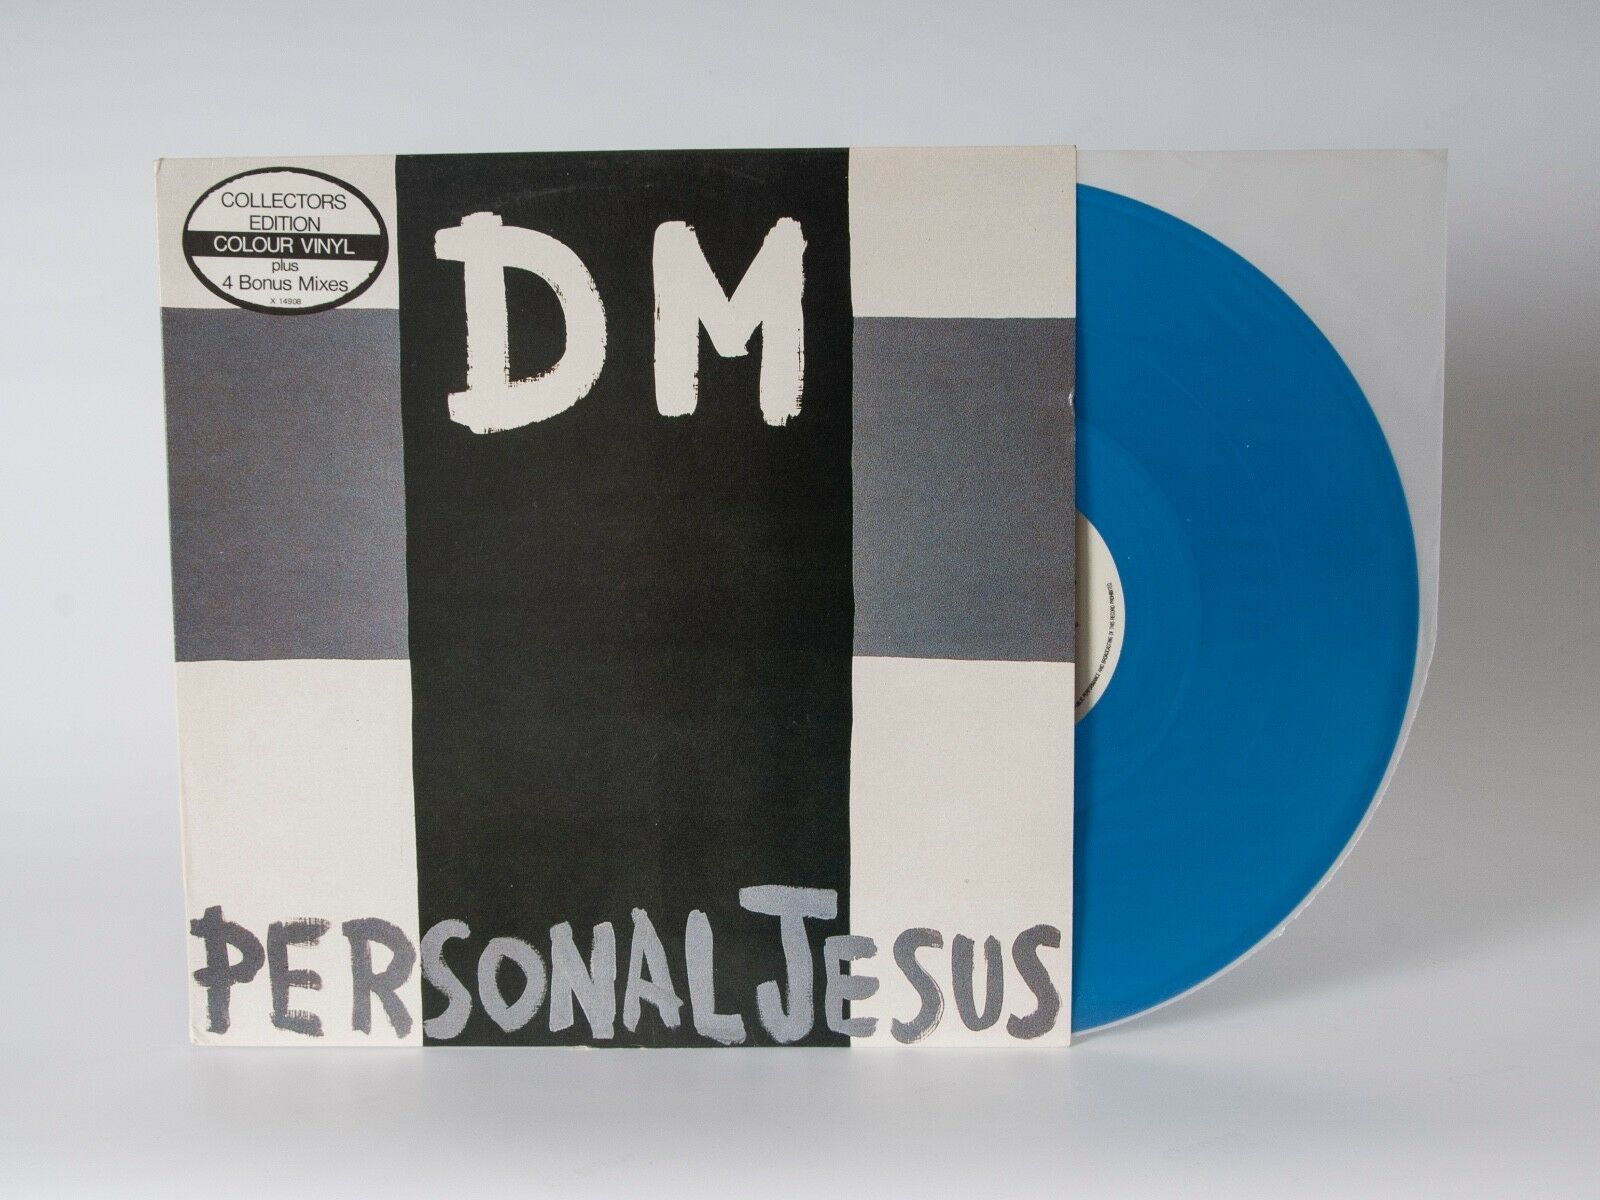 Depeche Mode: Personal Jesus Australia 12" in Blue vinyl (X14908) Rare promo